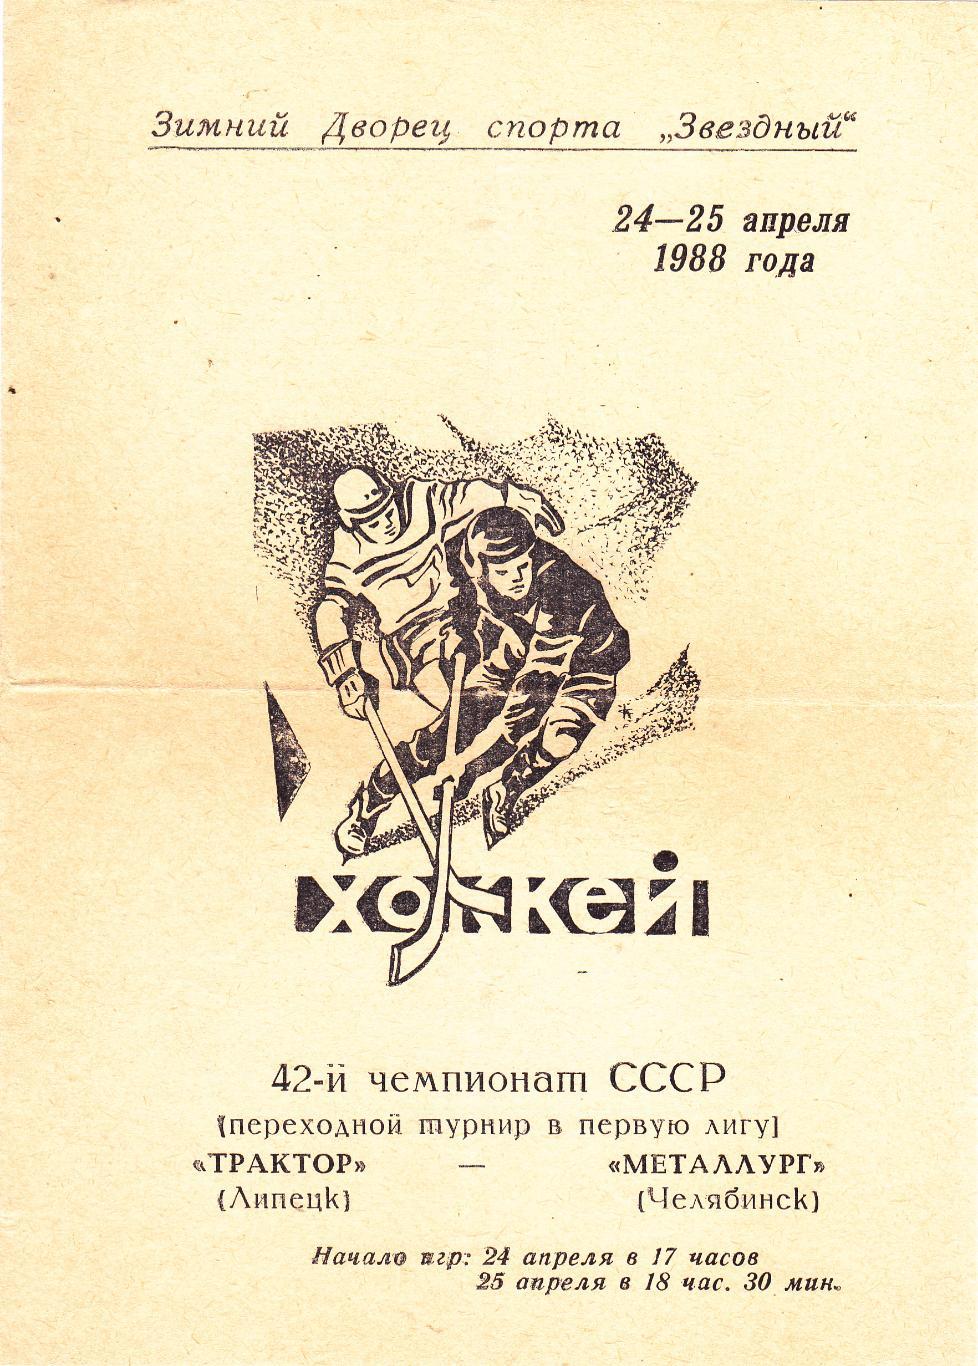 Трактор (Челябинск) - Металлург (Челябинск) 24-25.04.1988 (Переходный т-р)